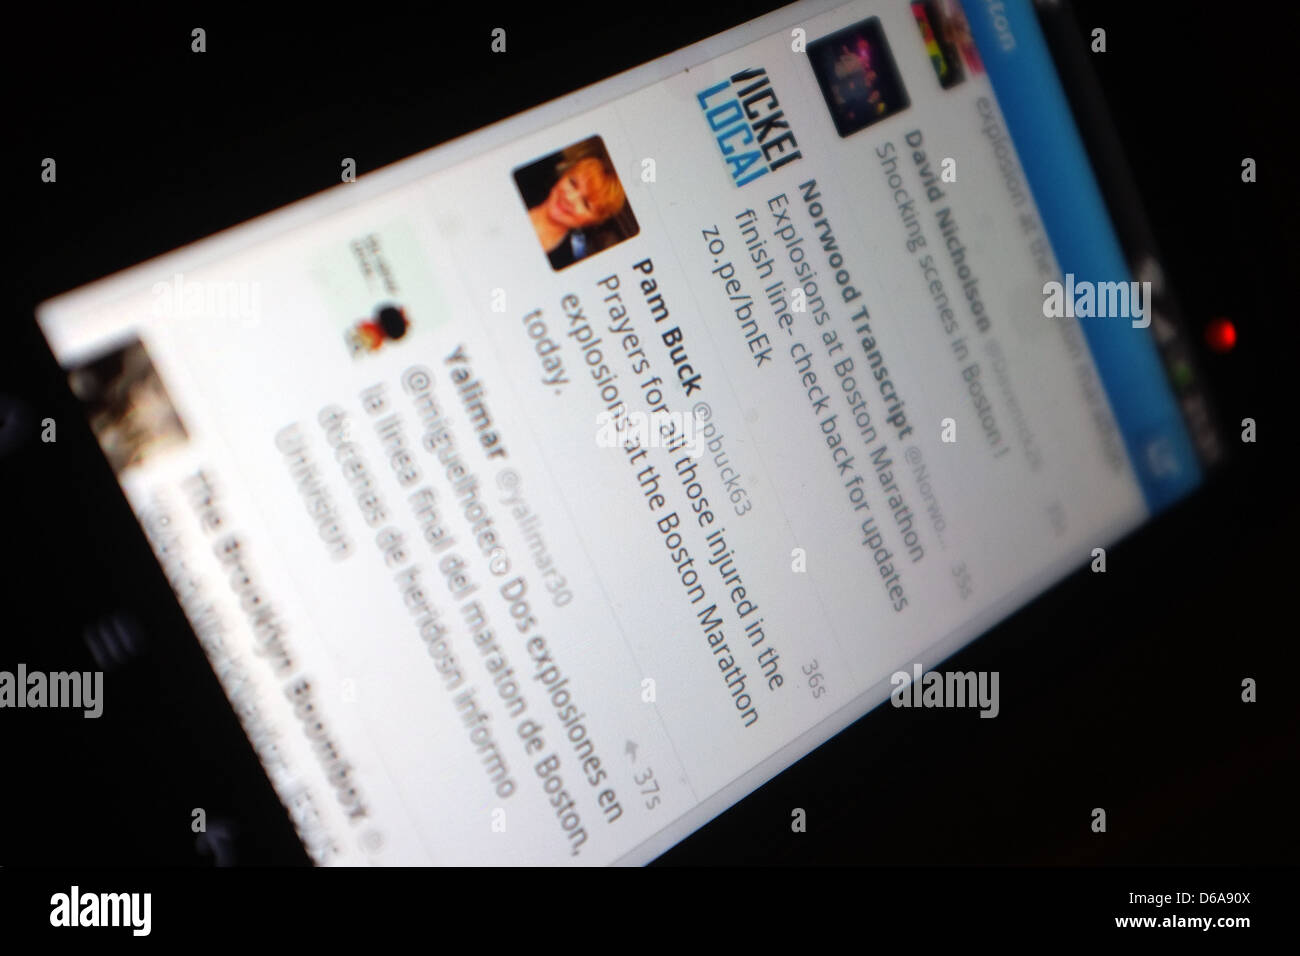 Ein Handy-Bildschirm zeigt die Tweets, die nach den Explosionen, die den Boston-Marathon am 15. April 2013 getroffen. Stockfoto